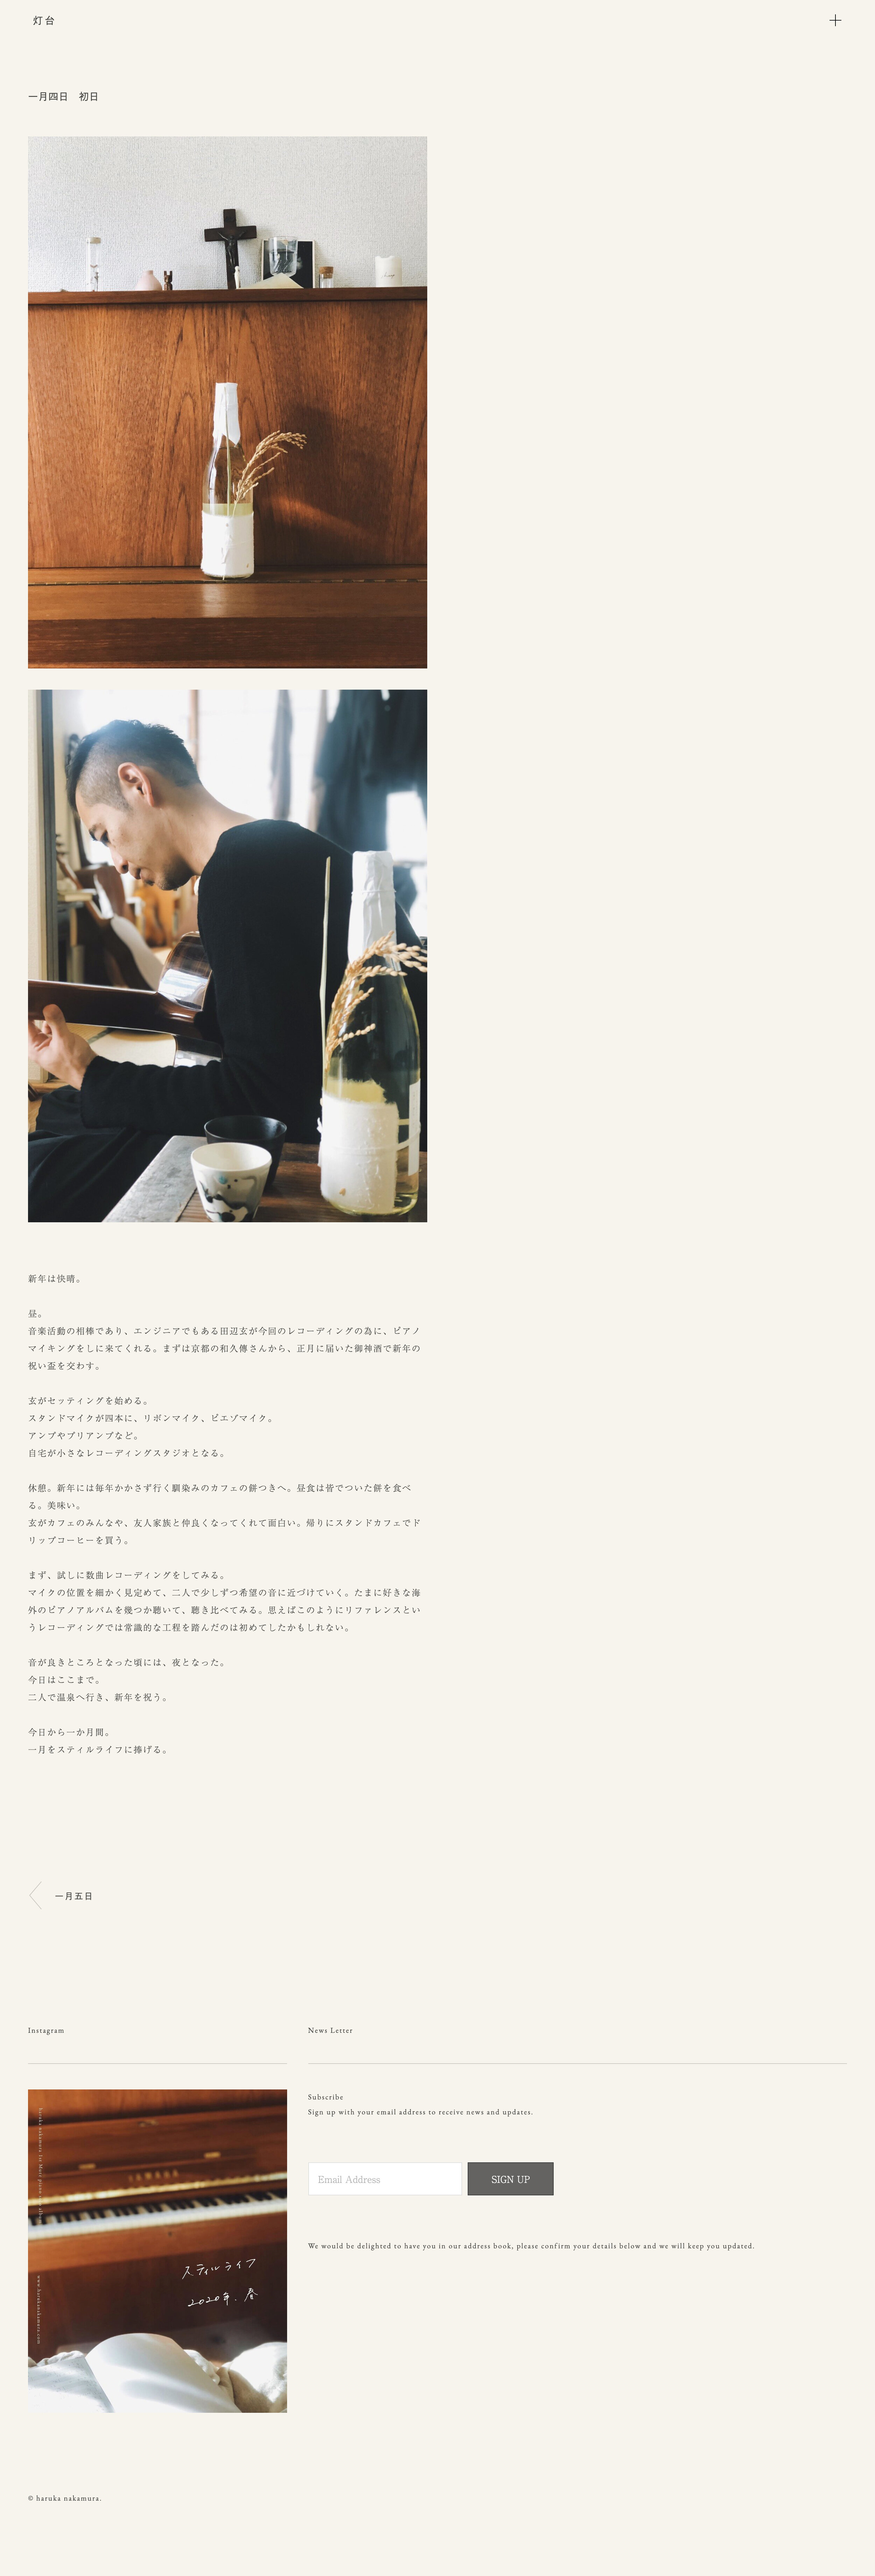 screencapture-toudai-harukanakamura-blog-190104-2020-01-07-16_02_51のコピー.jpg